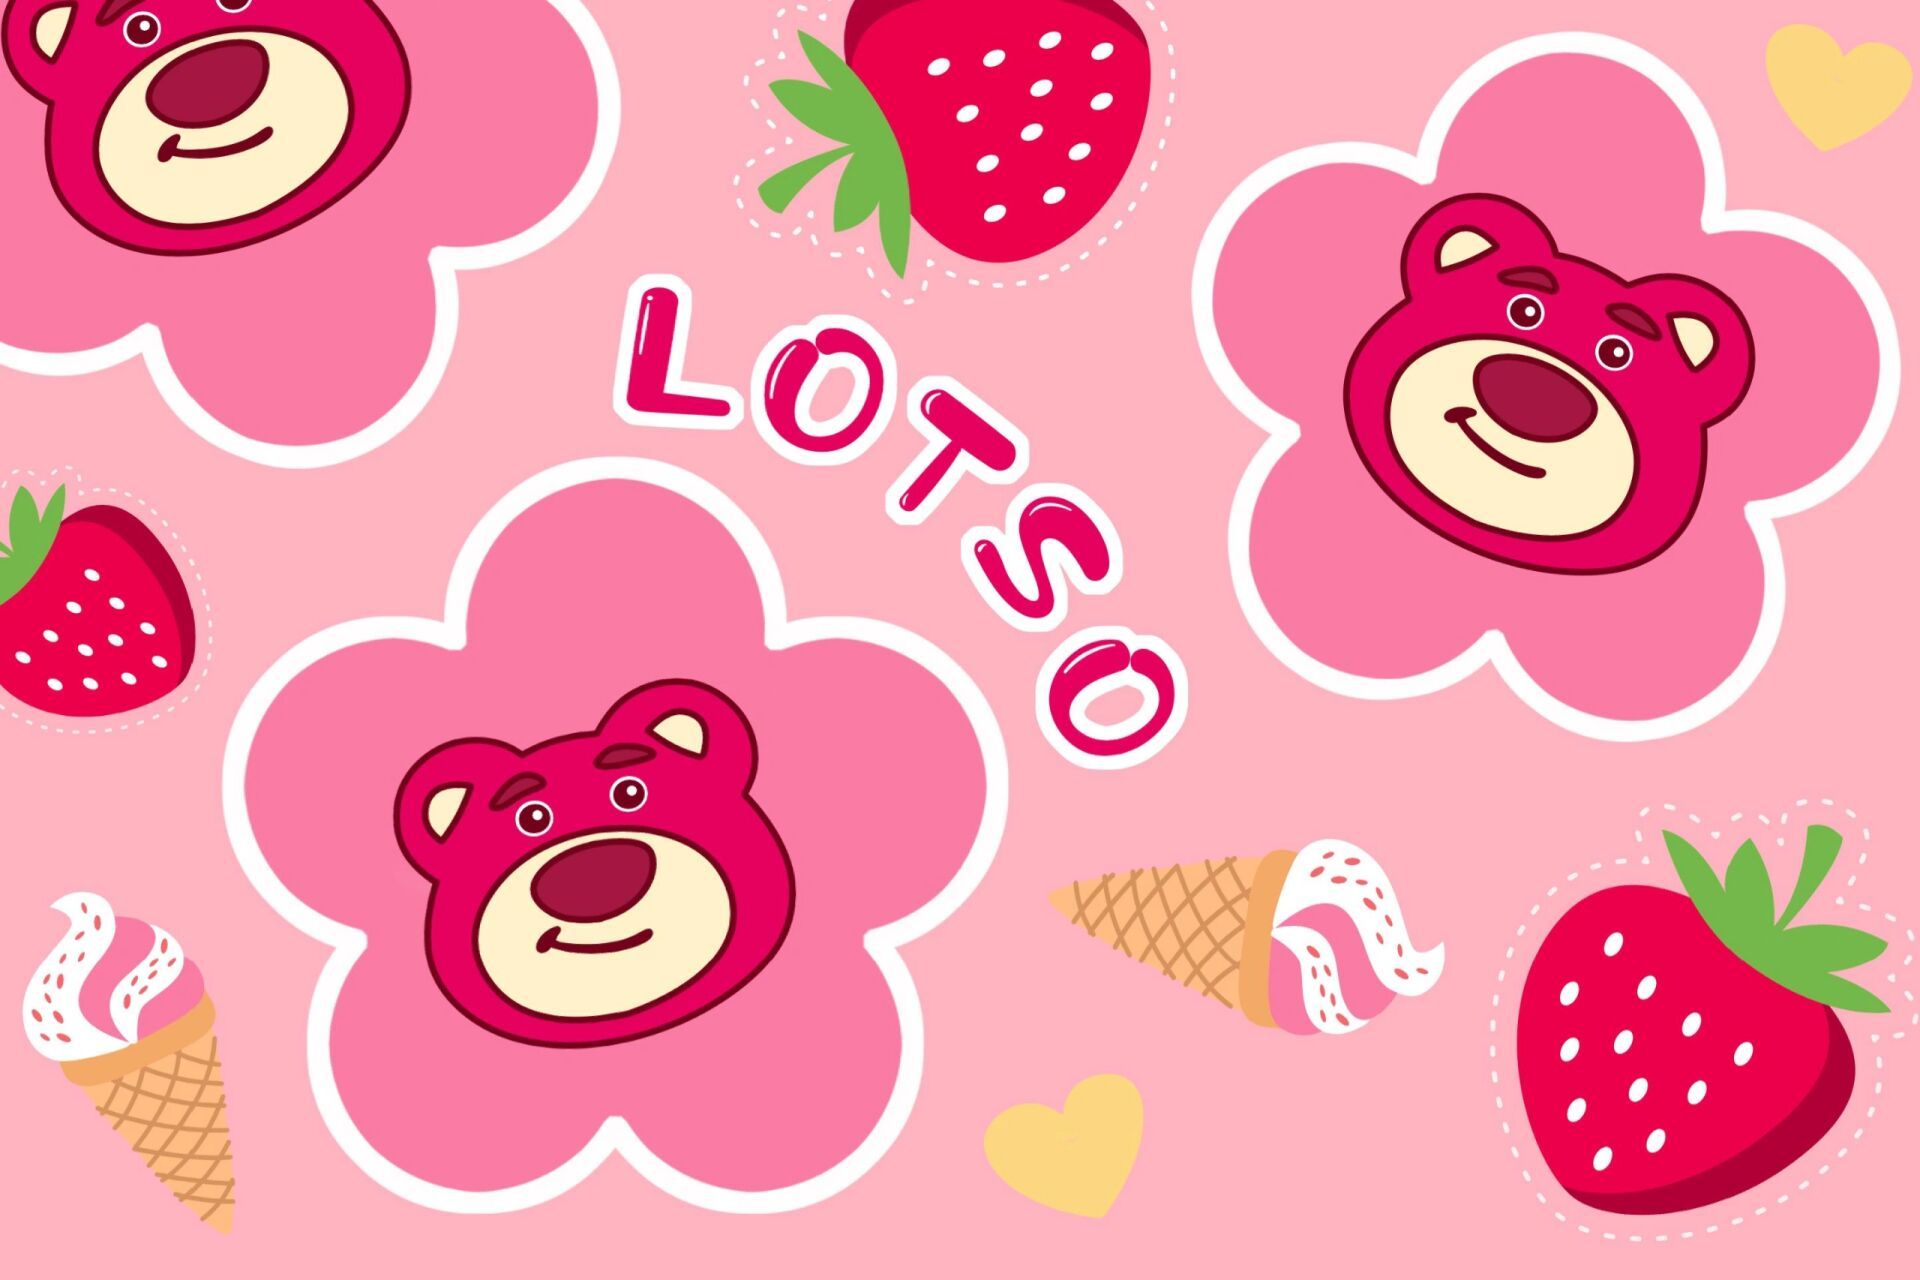 草莓熊壁纸格子图片